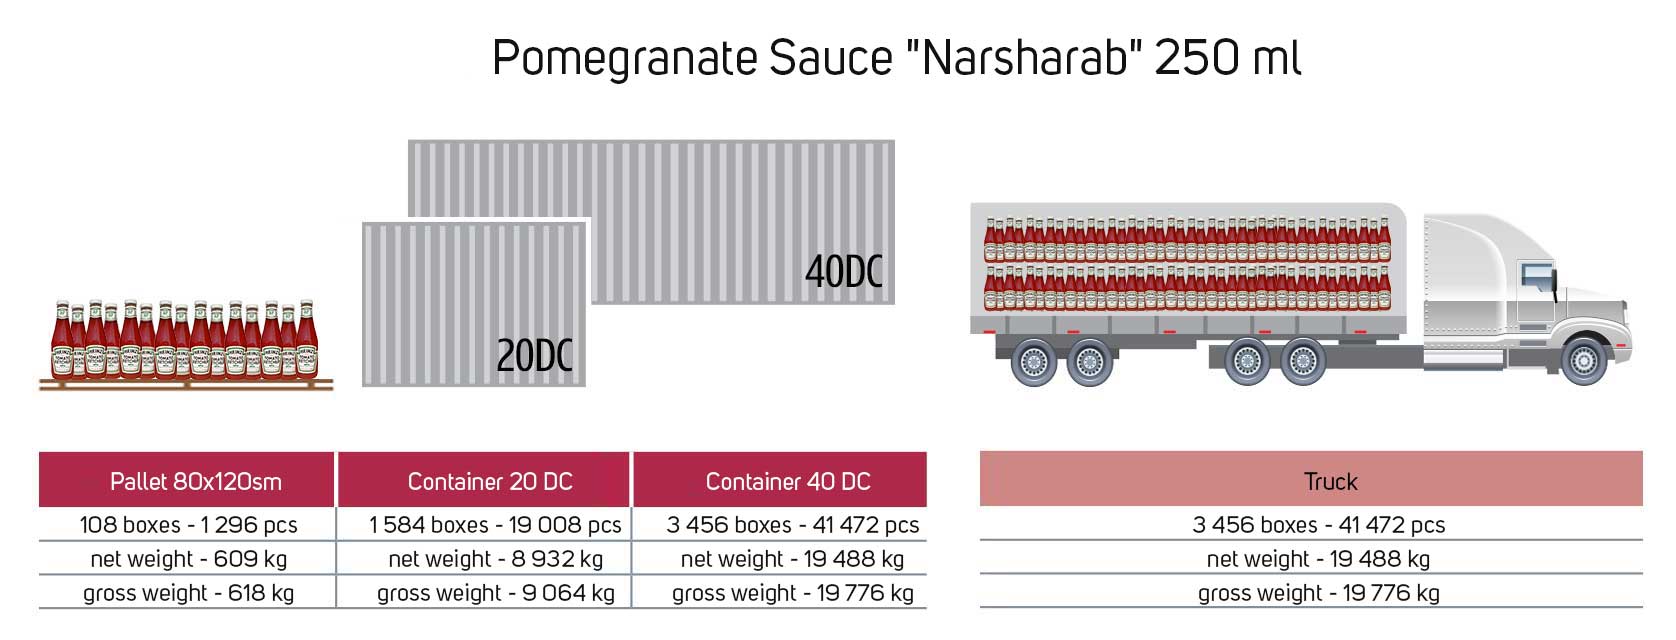 Pomegranate-Sauce-Narsharab-250